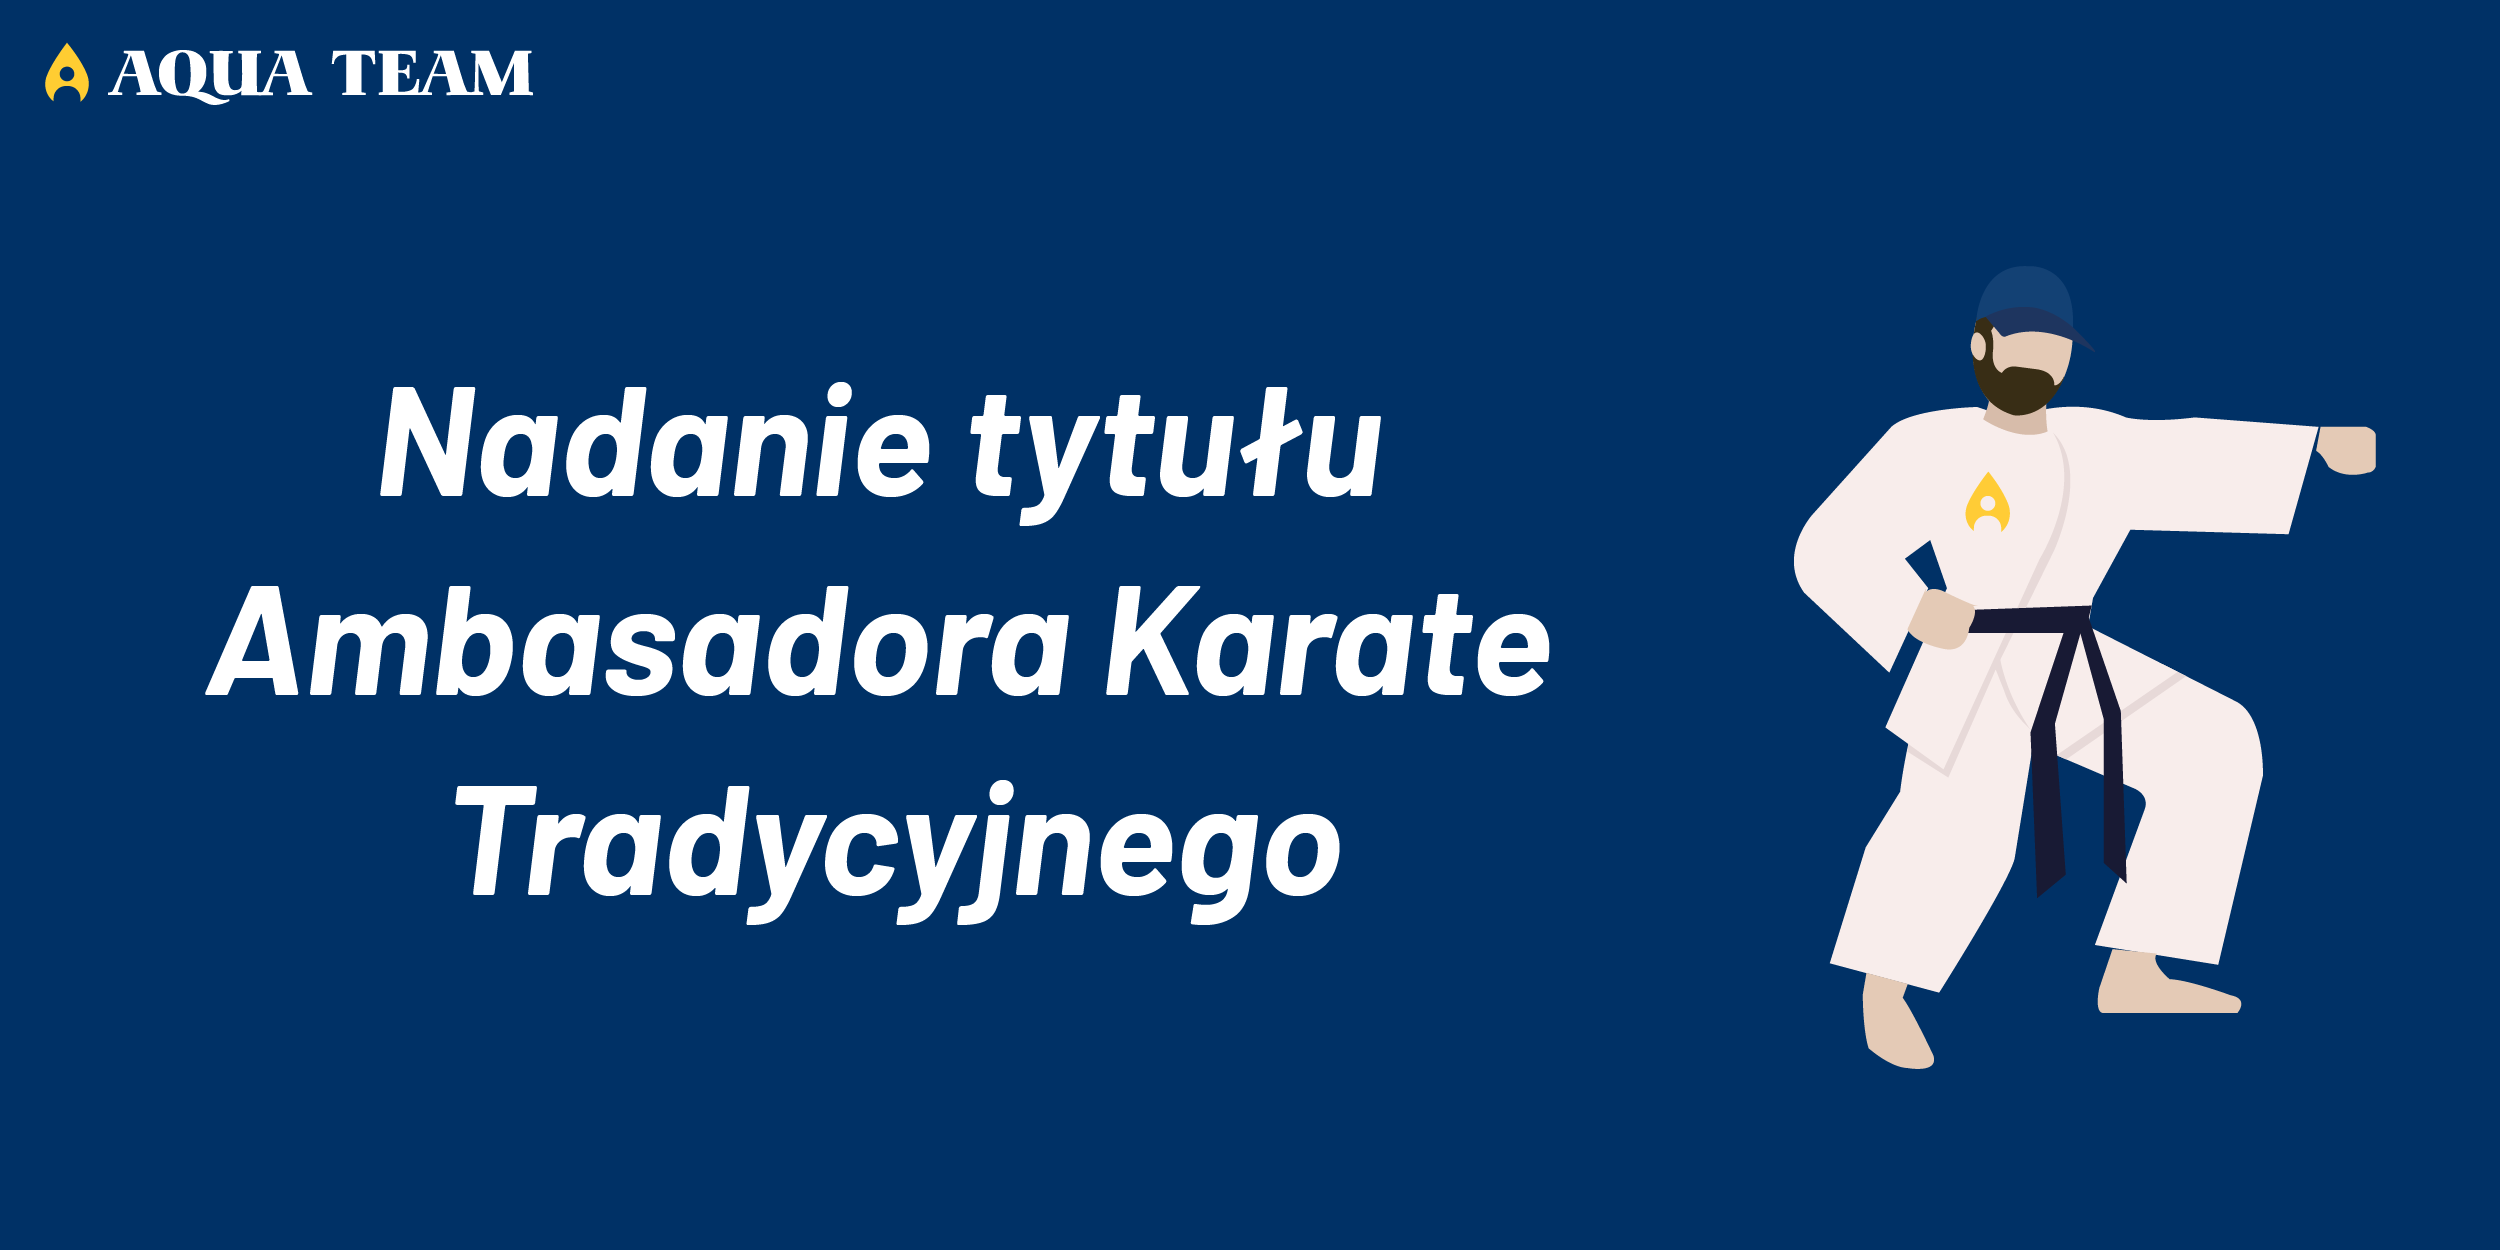 Nadanie tytułu Ambasadora Karate Tradycyjnego